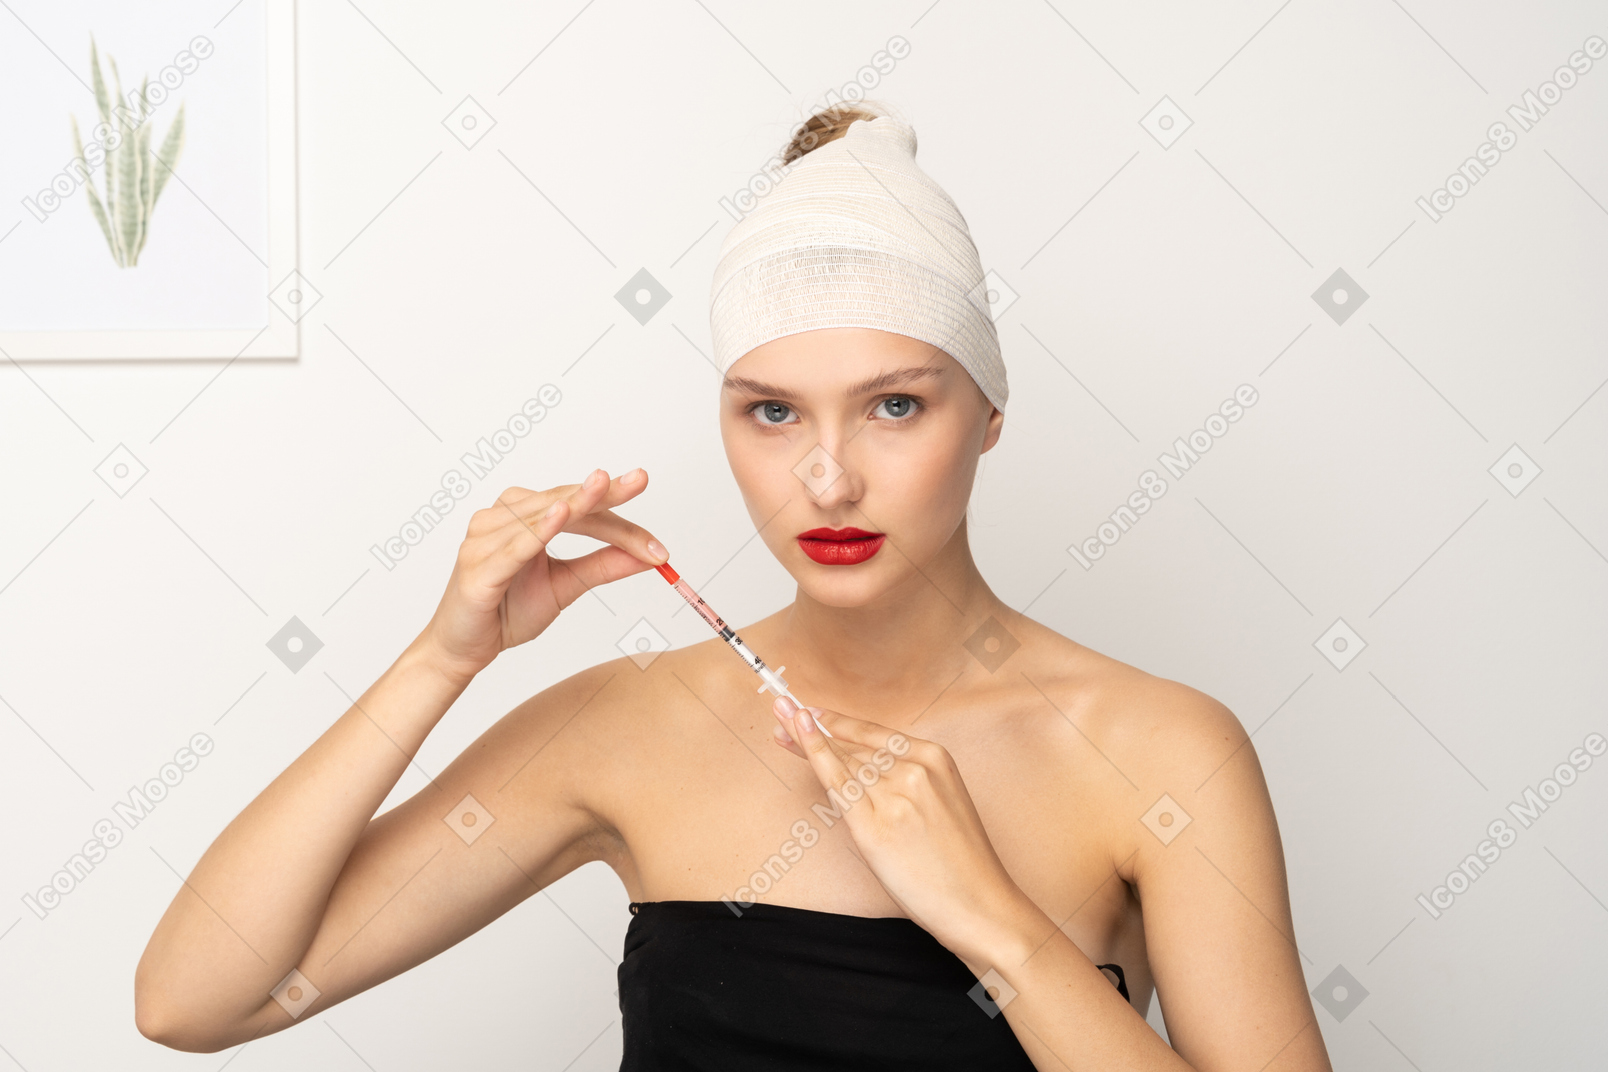 Молодая женщина с перевязанной головой, держащая шприц